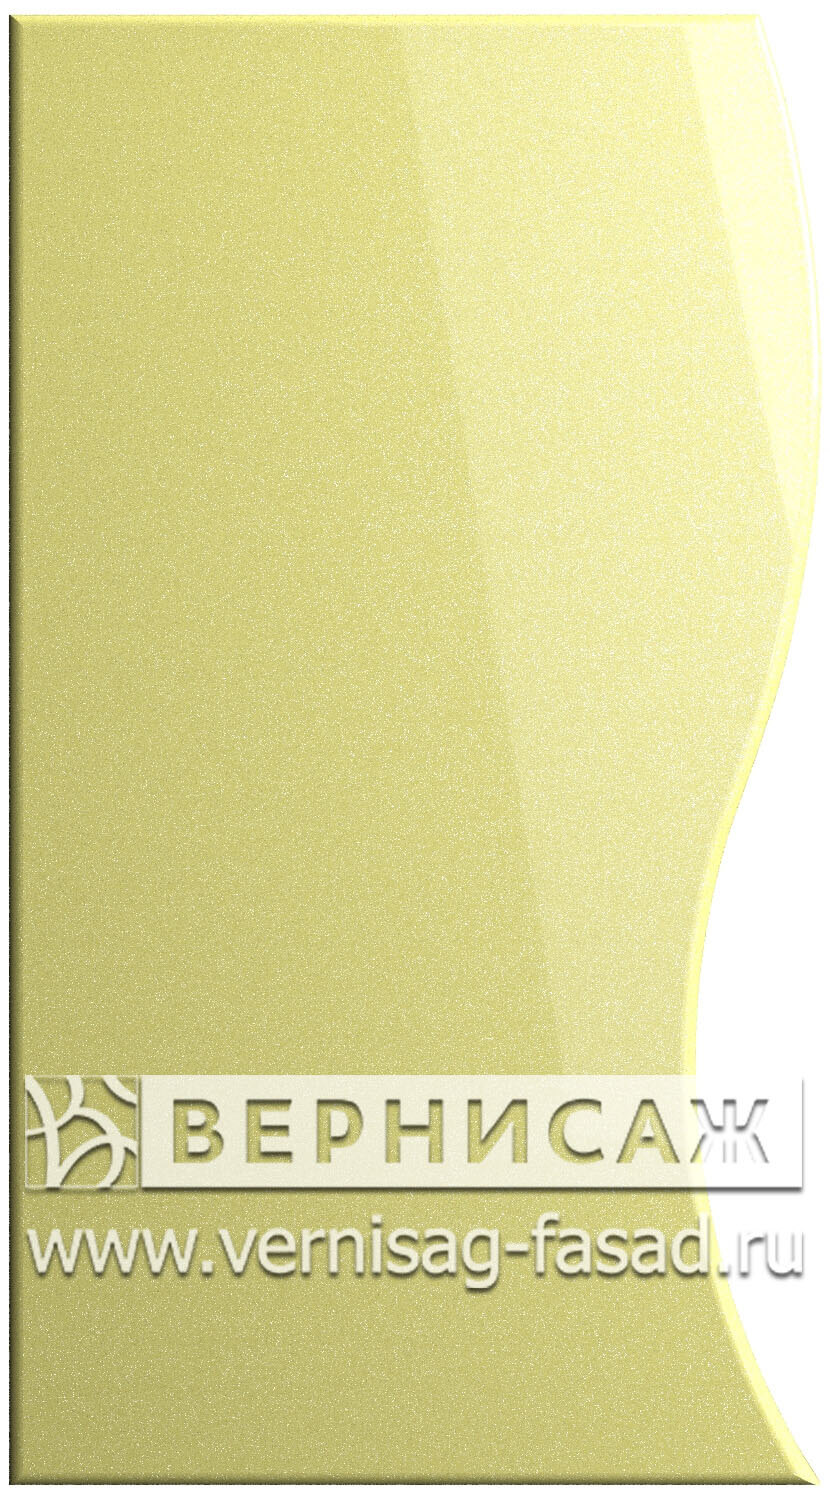 Фасады в пленке ПВХ, Фрезеровка № 22, цвет Светло -желтый металлик